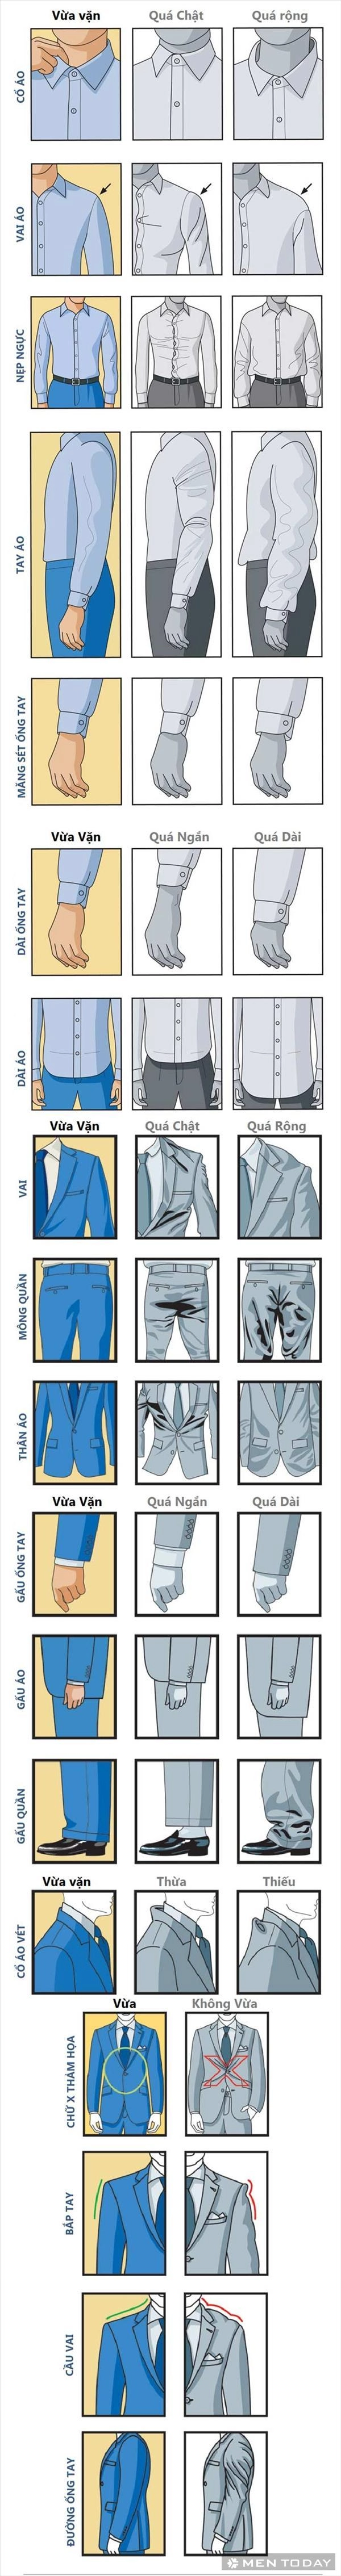 Khái niệm chuẩn đẹp của suit nam